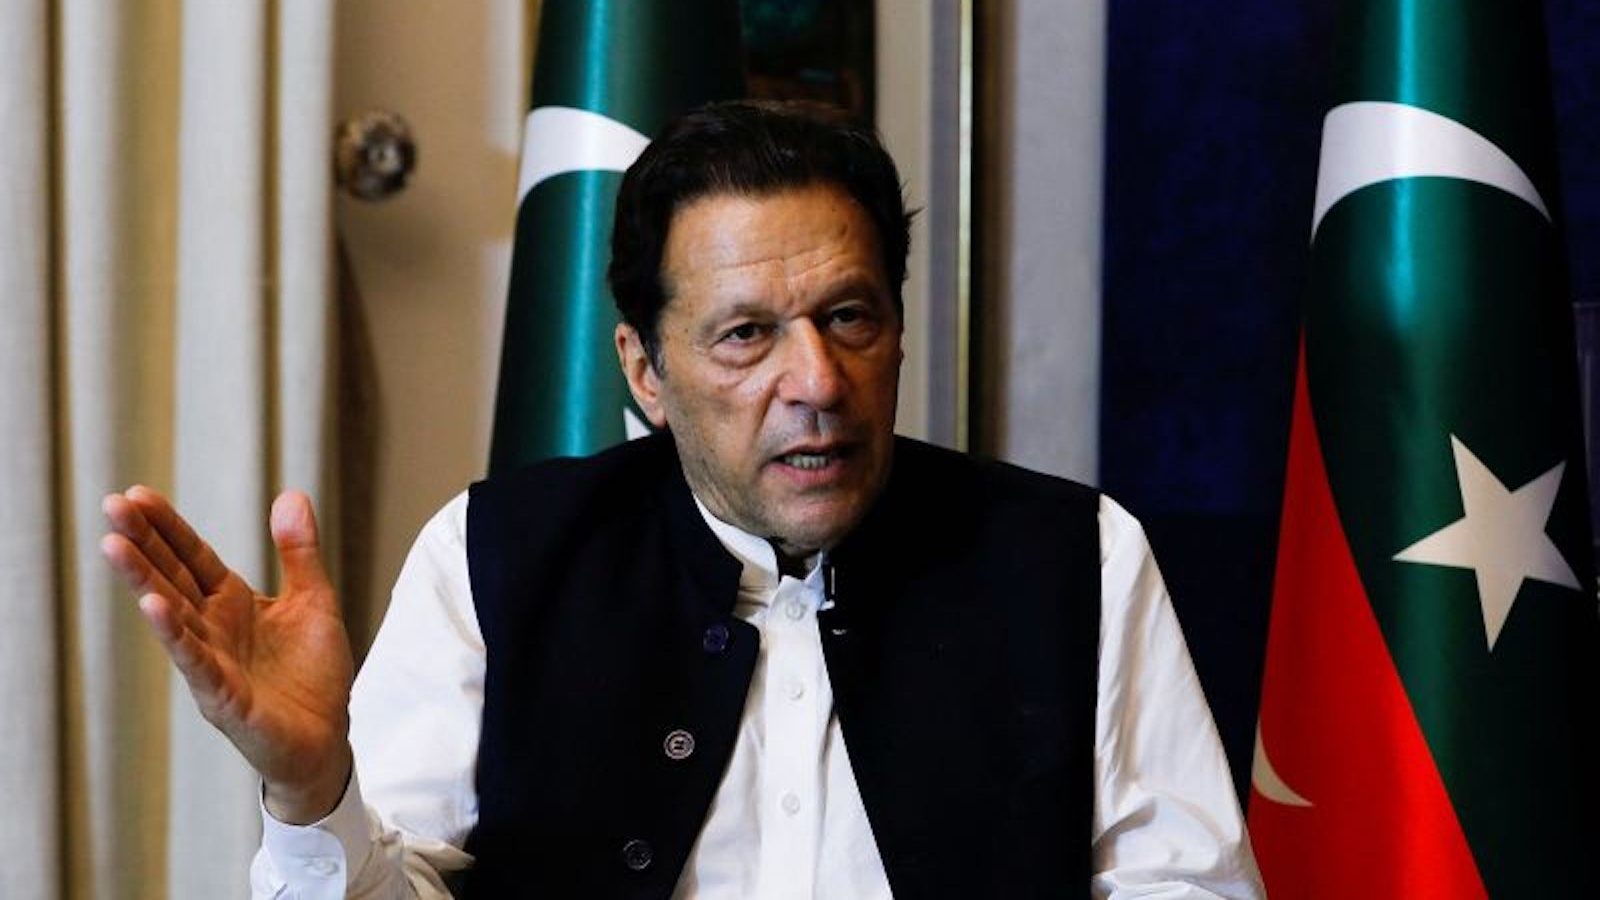 El arresto del ex primer ministro de Pakistán, Imran Khan, fue ilegal, dicta la Corte Suprema